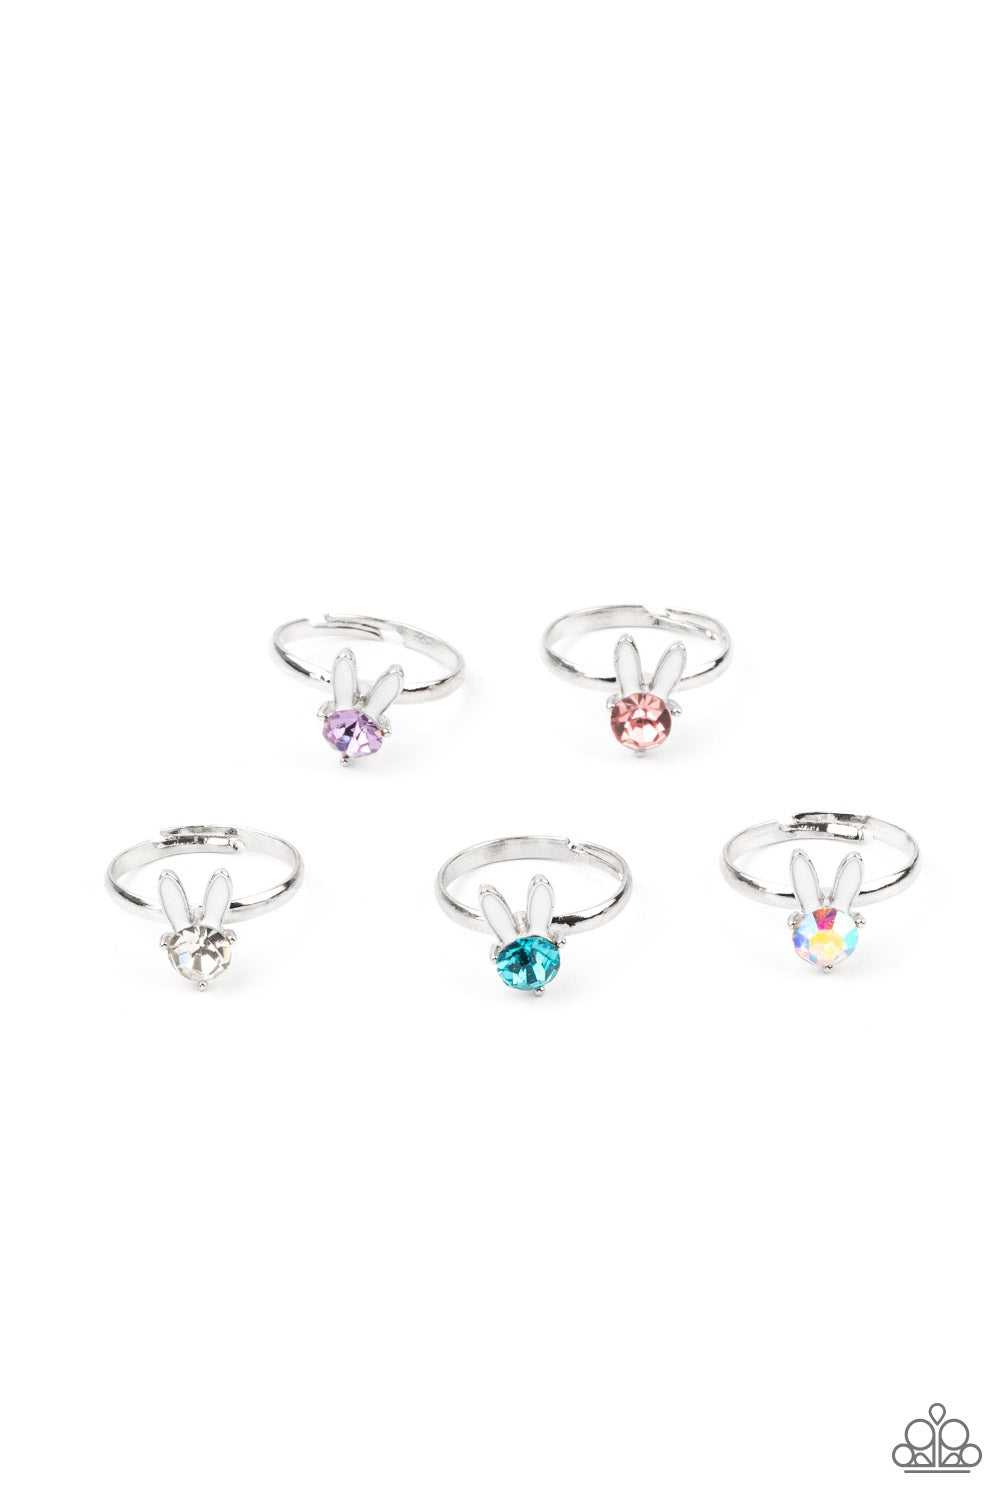 Paparazzi Starlet Shimmer Bunny Ears Ring Kit ~ Easter Inspired Ring Kit for Little Divas Easter 2021 (P4SS-MTXX-267XX)